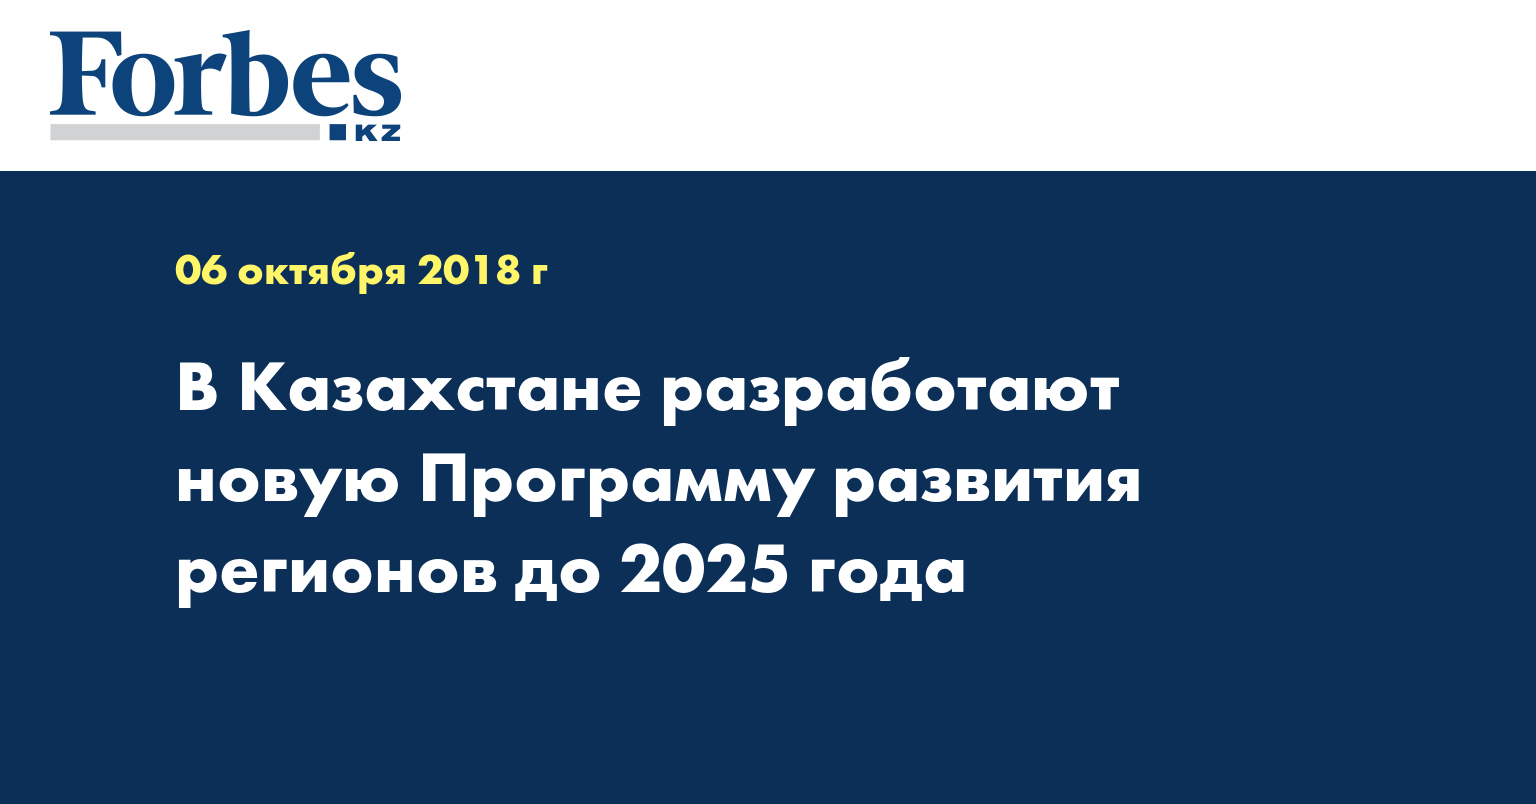 В Казахстане разработают новую Программу развития регионов до 2025 года 